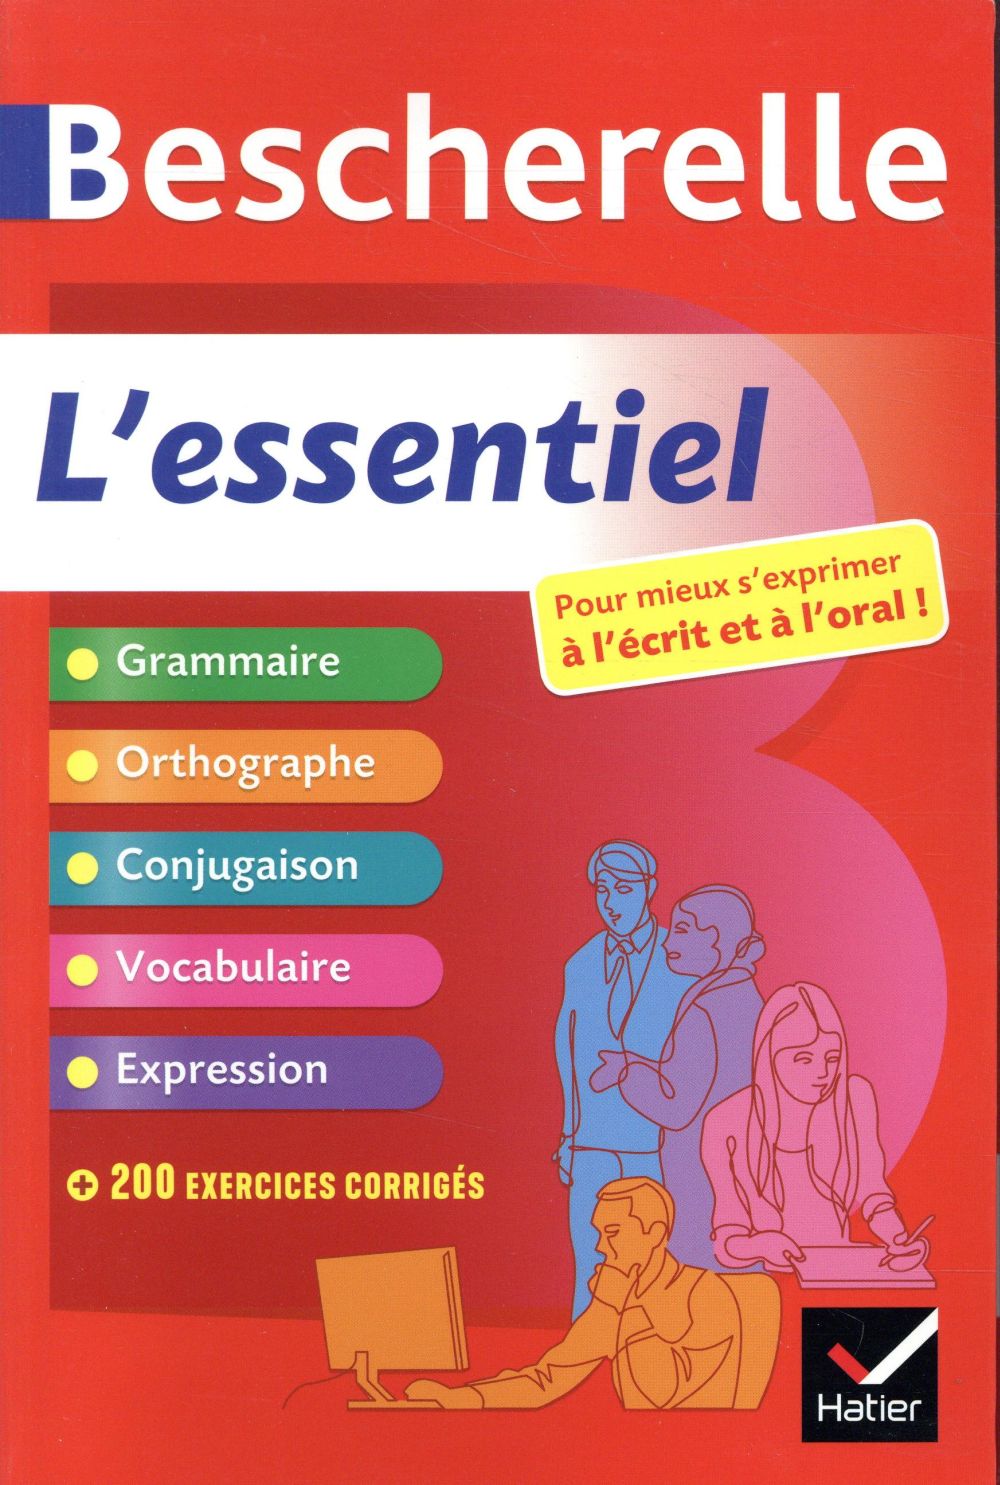 BESCHERELLE L'ESSENTIEL - TOUT-EN-UN SUR LA LANGUE FRANCAISE (GRAMMAIRE, ORTHOGRAPHE, CONJUGAISON, E